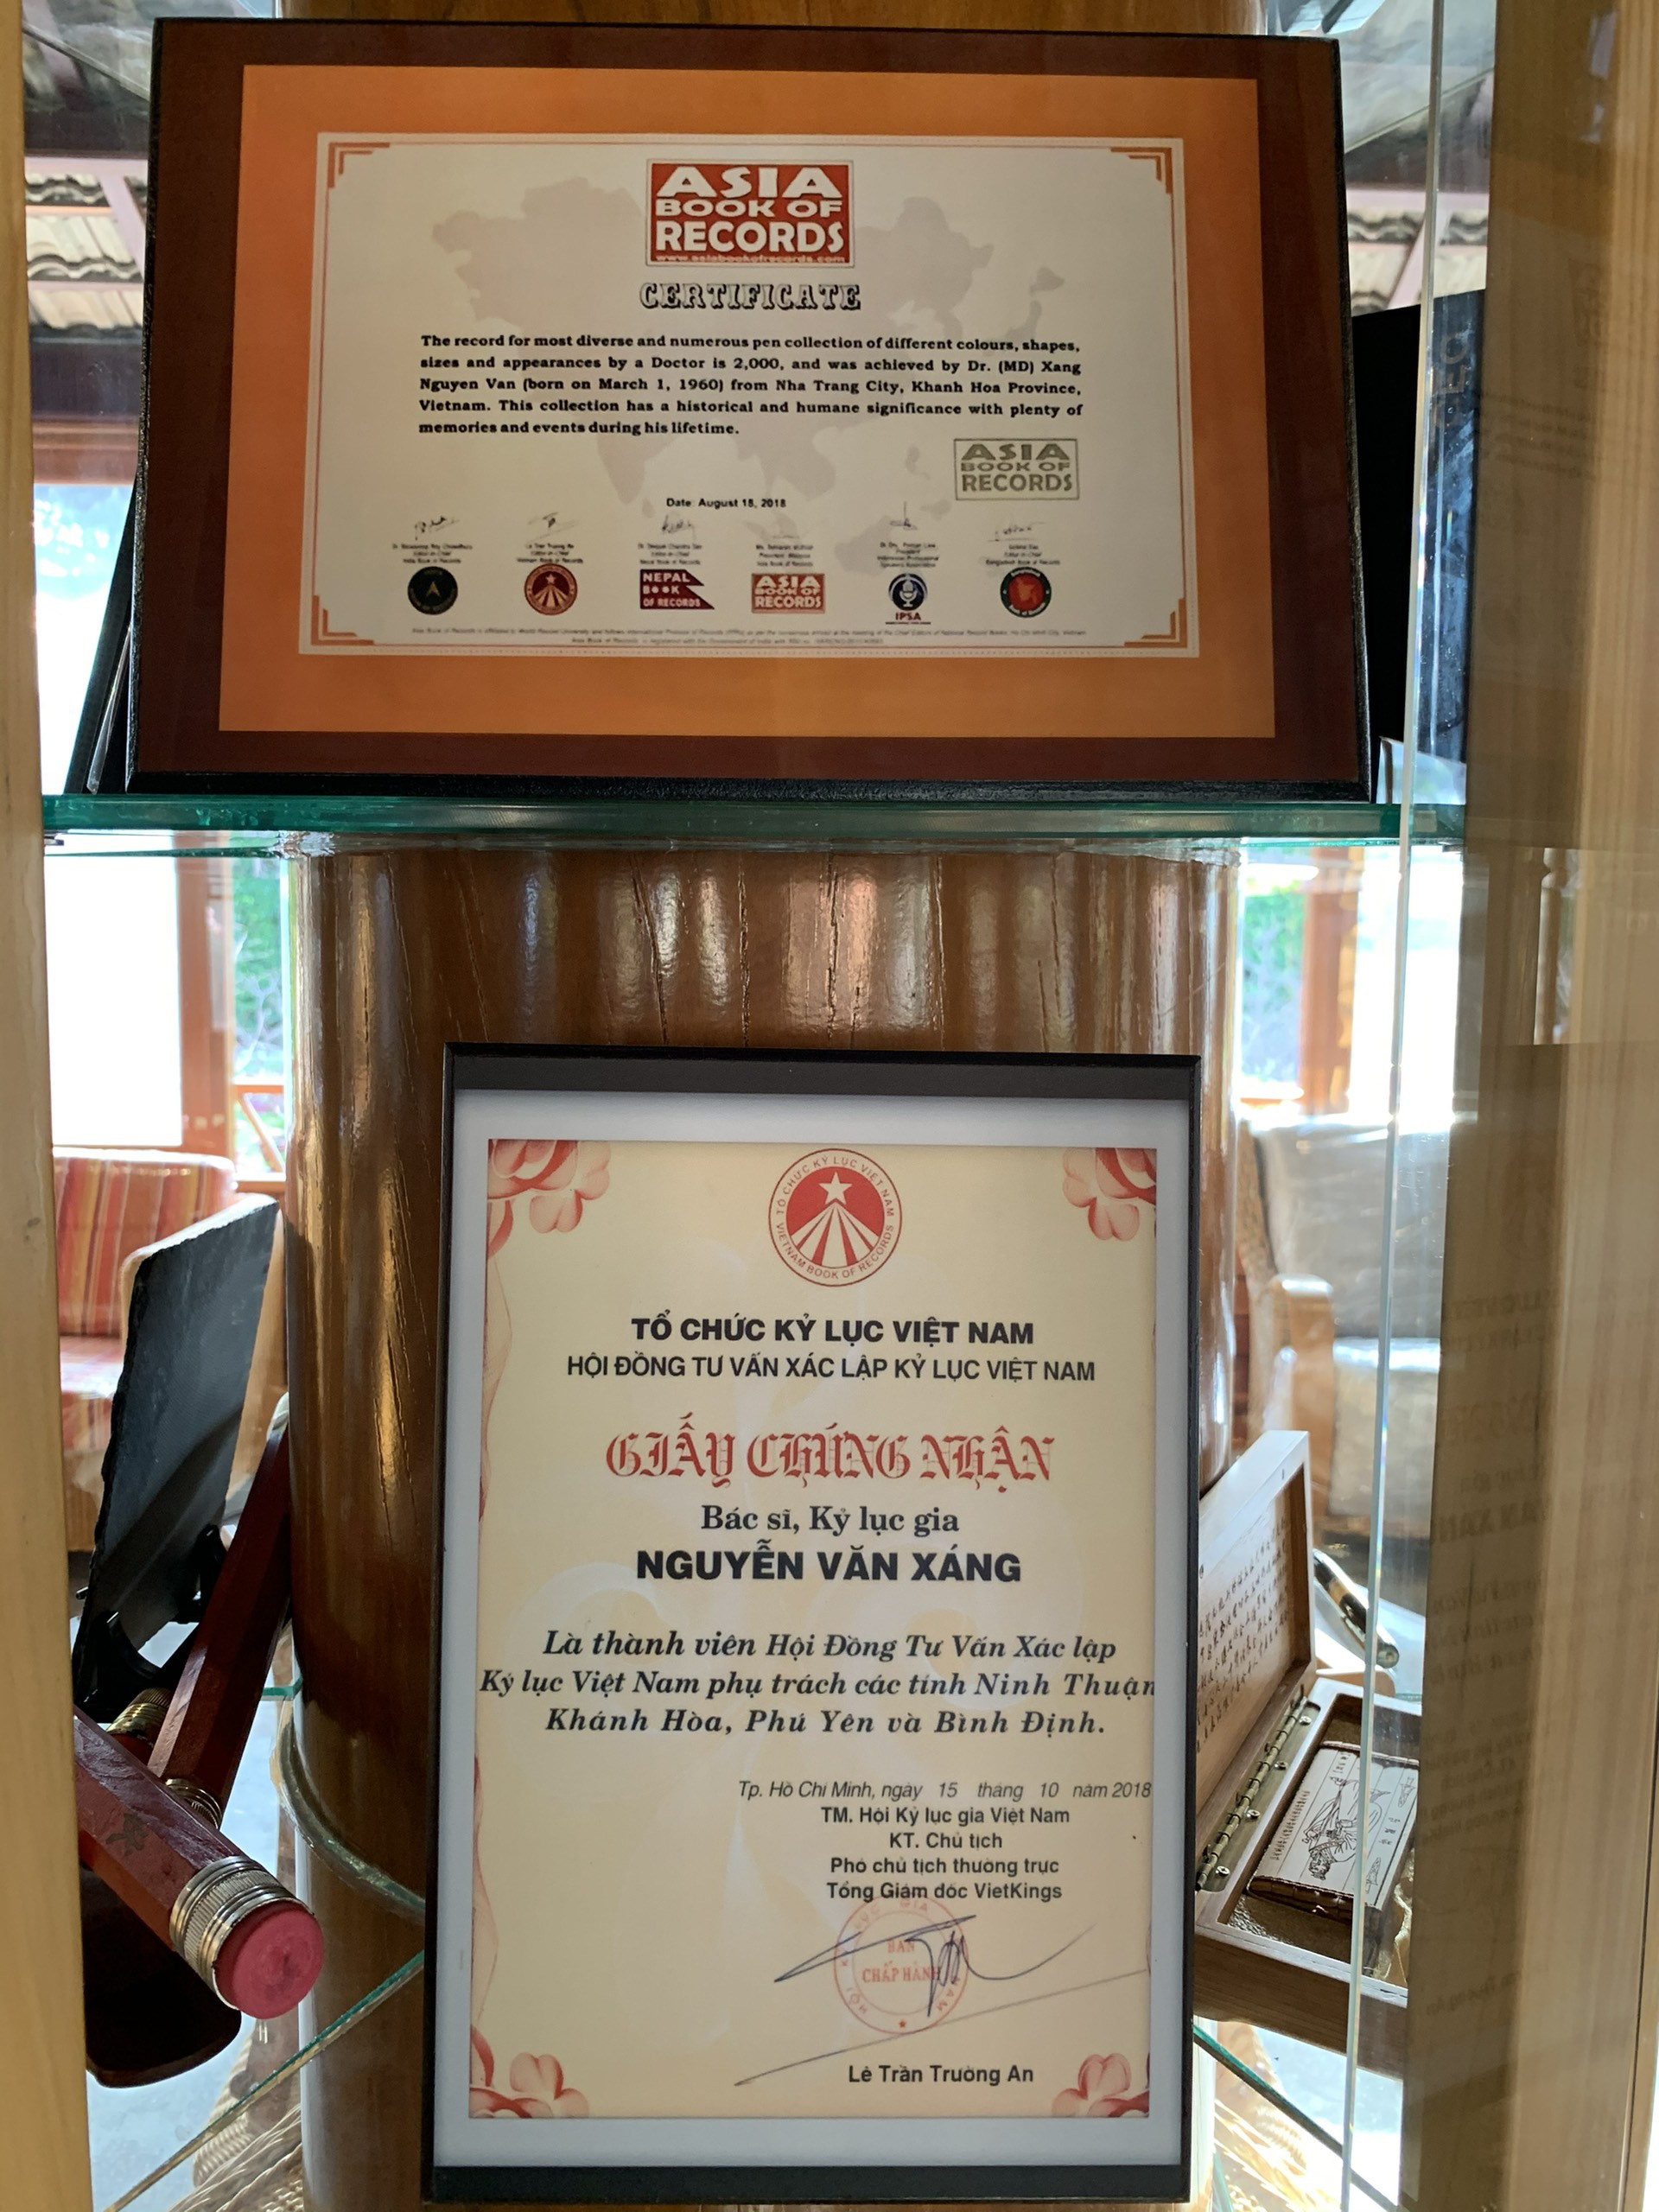 Độc đáo bộ sưu tập bút 4.000 cây, đạt kỷ lục Châu Á của vị bác sĩ ở Nha Trang - Ảnh 17.